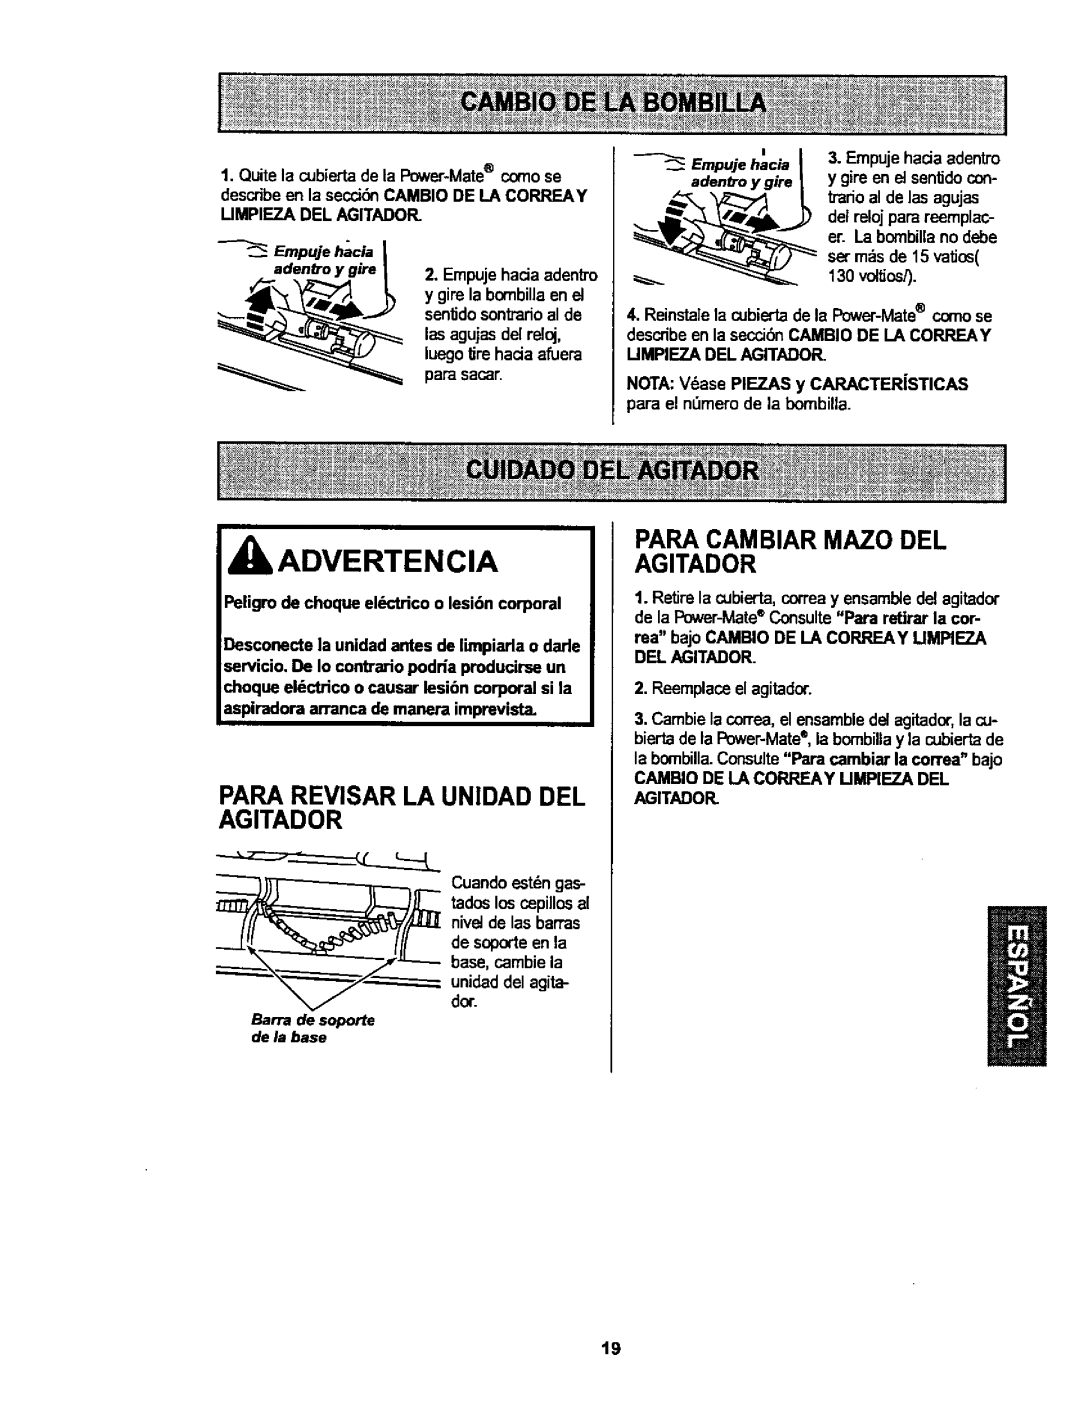 Kenmore 116.25915, 116.25914 owner manual Para Revisar La Unidad Del Agitador, Para Cambiar Mazo Del Agitador, Advertencia 